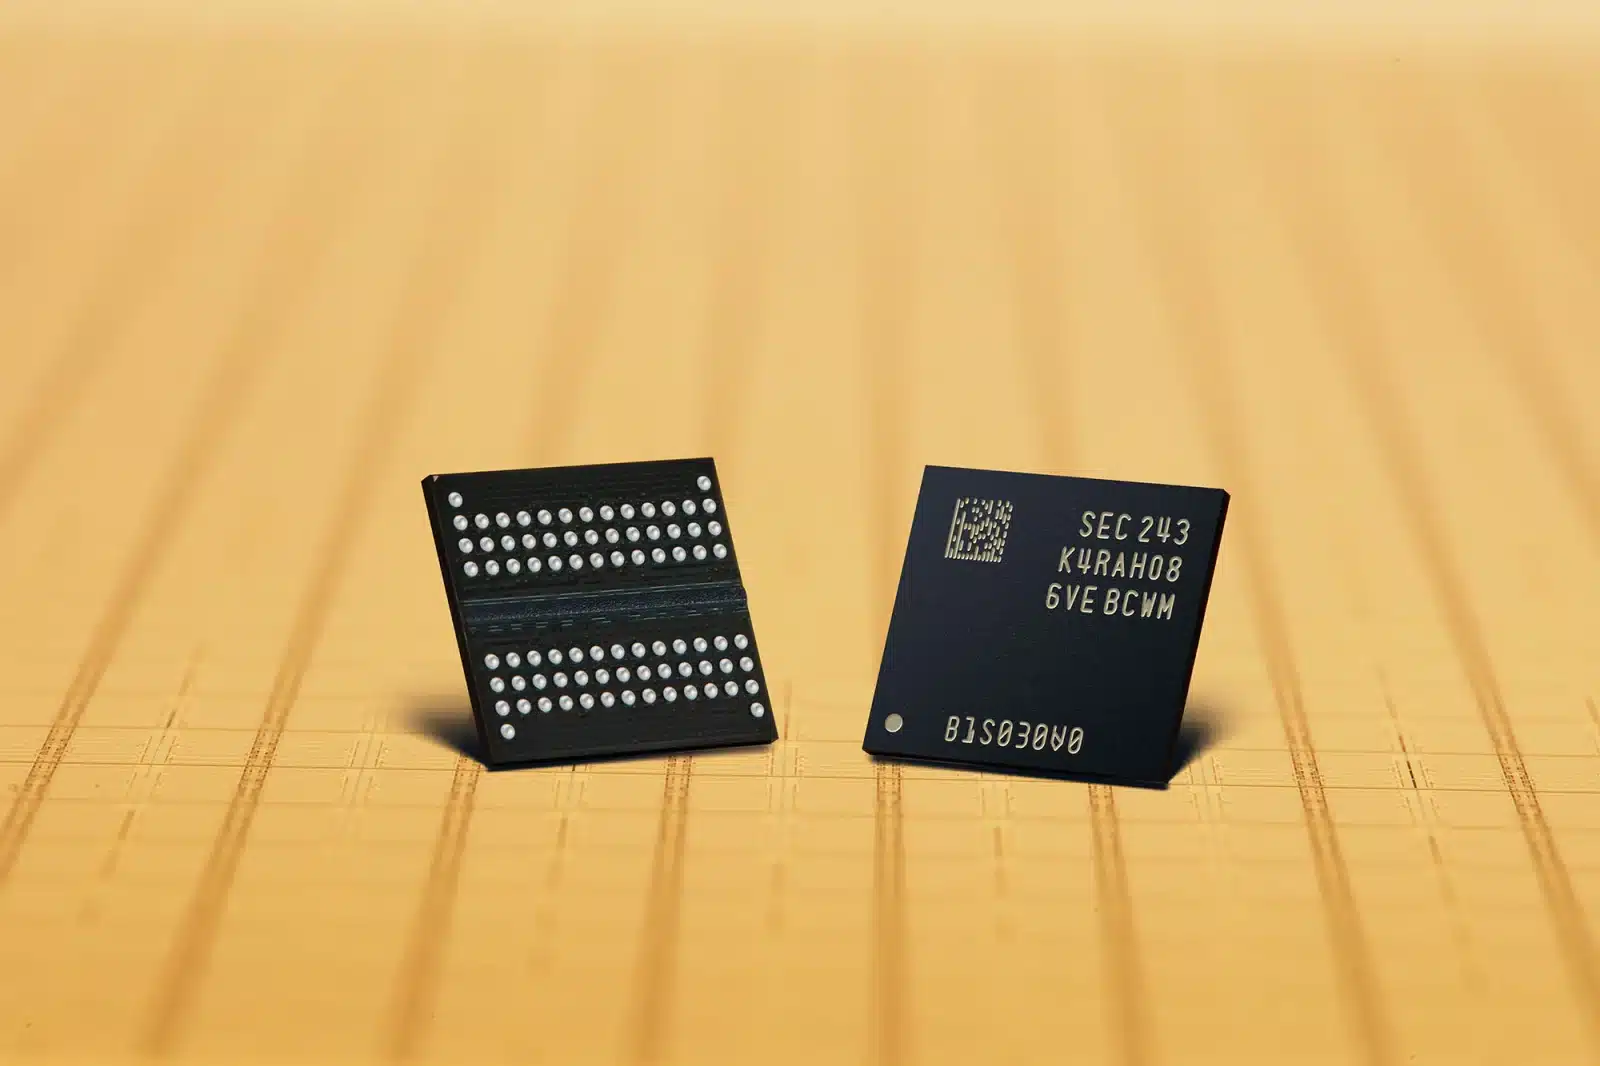 Samsung、シリコンバレーに新たな半導体研究所を開設、次世代3D DRAMを研究へ